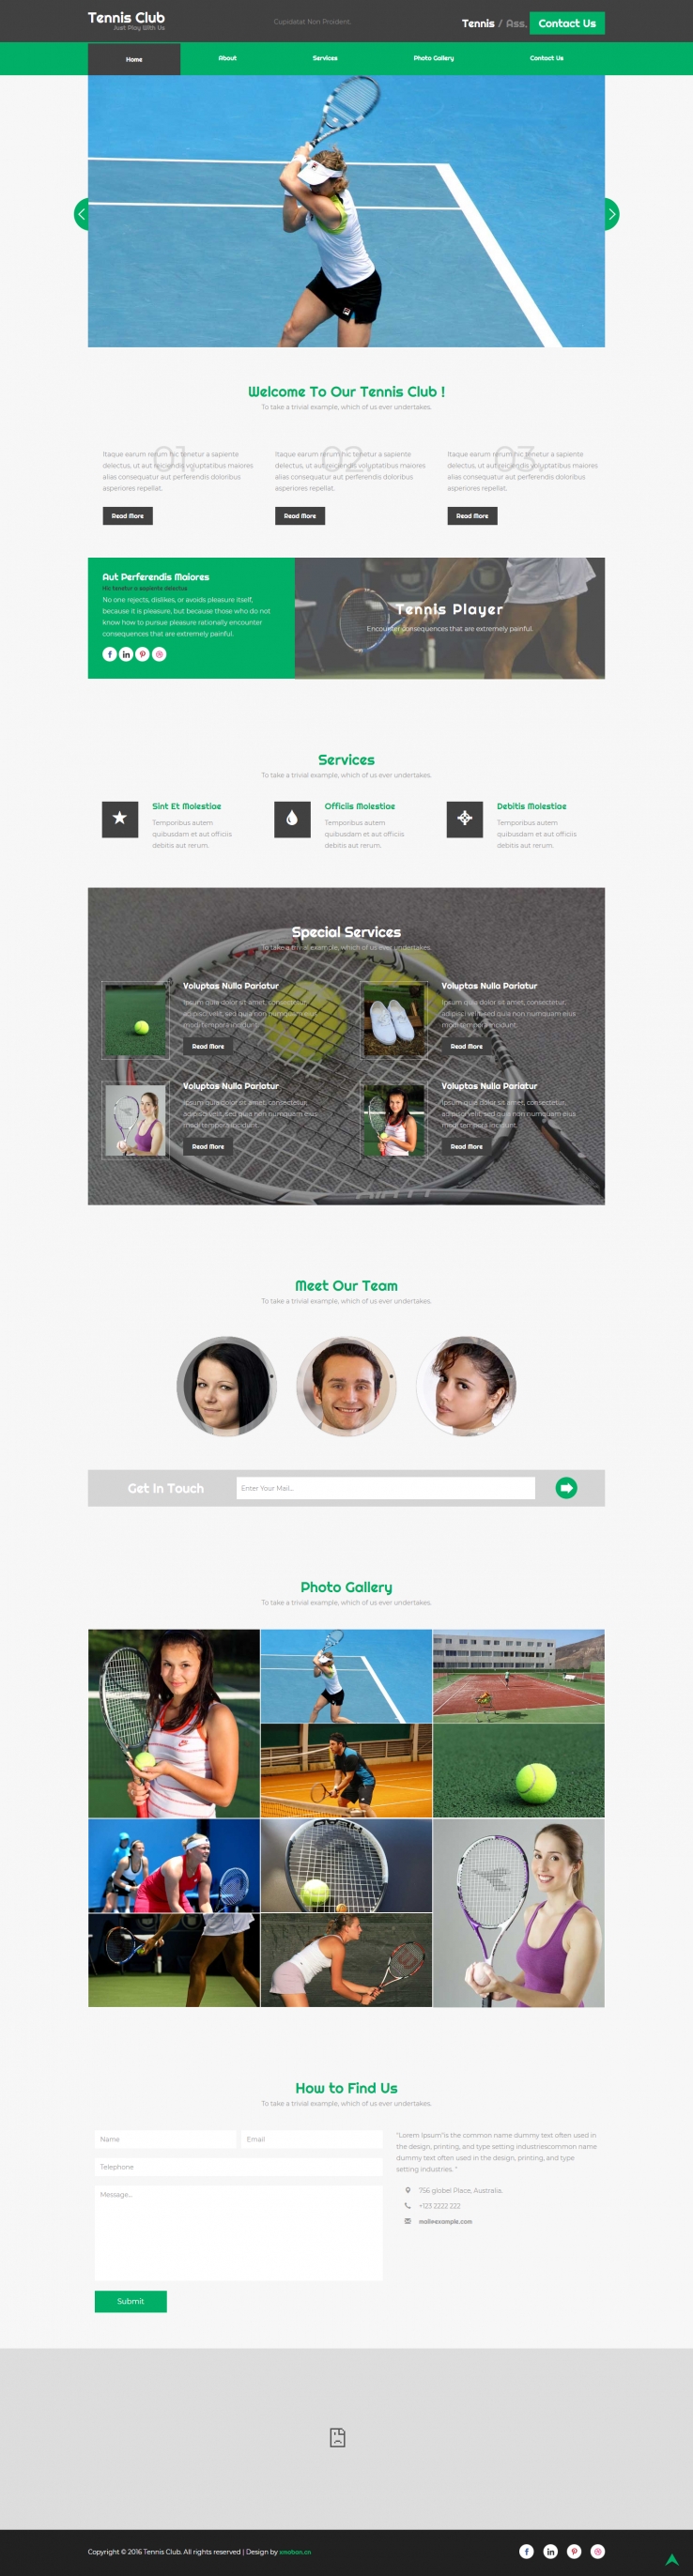 绿色欧美风格的网球俱乐部企业网站源码下载